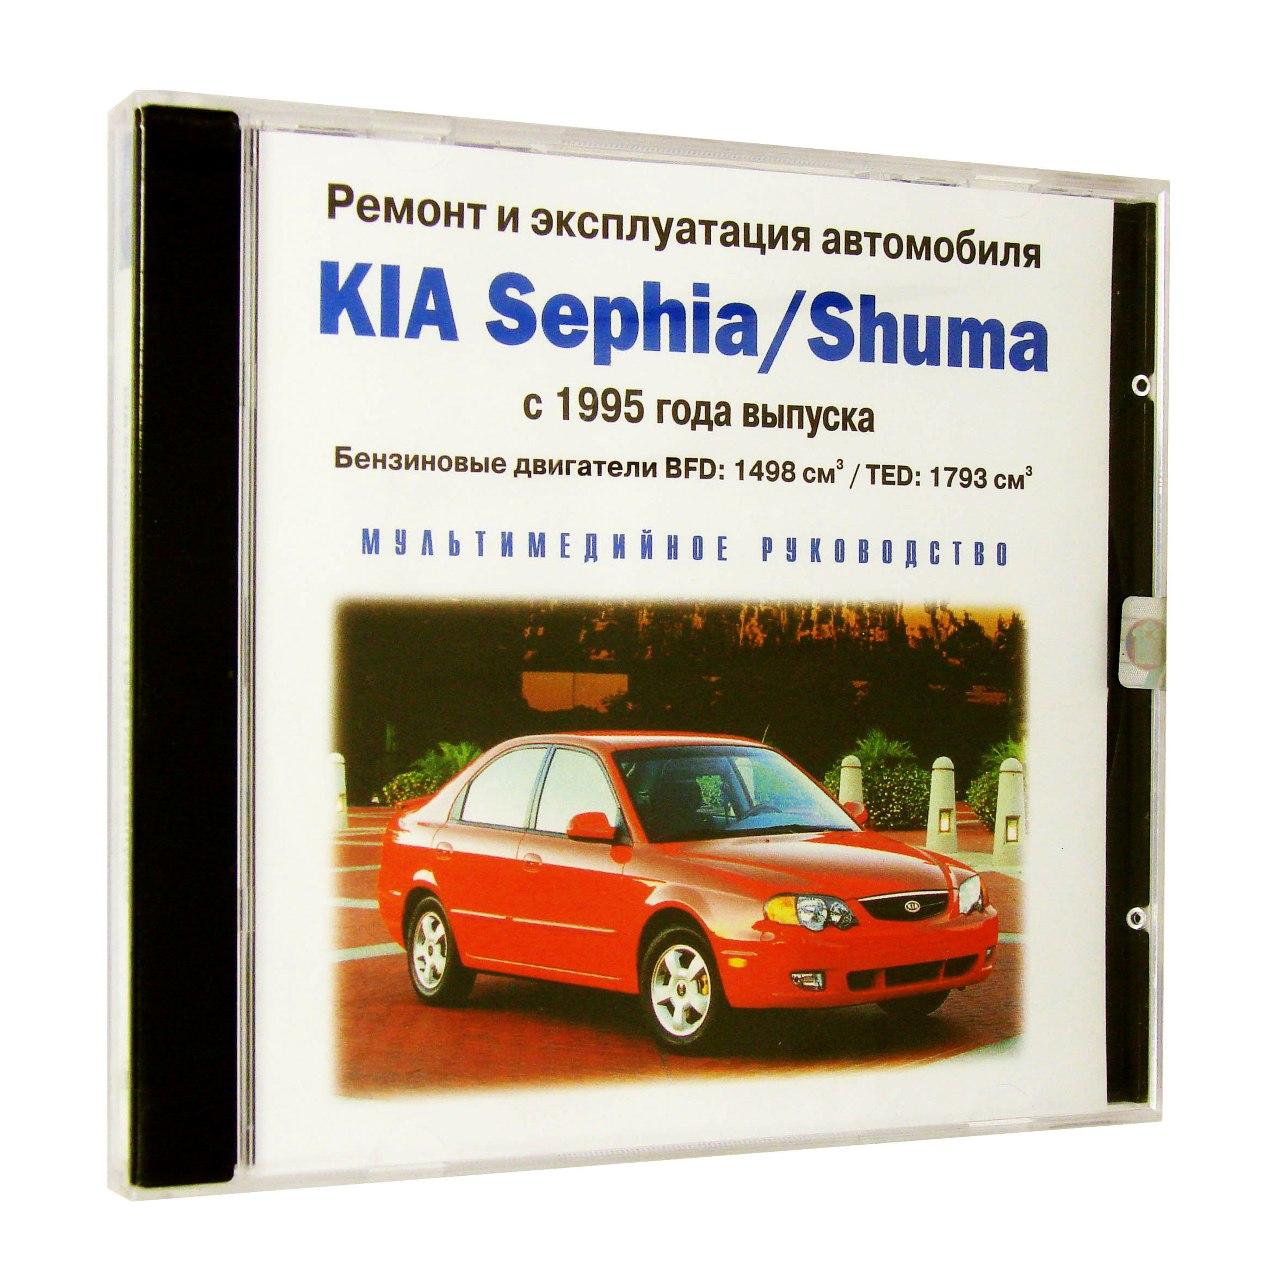 Компьютерный компакт-диск Kia Sephia / Shuma с 1995  ремонт и эксплуатация автомобиля (ПК), фирма "RMG Multimedia", 1CD